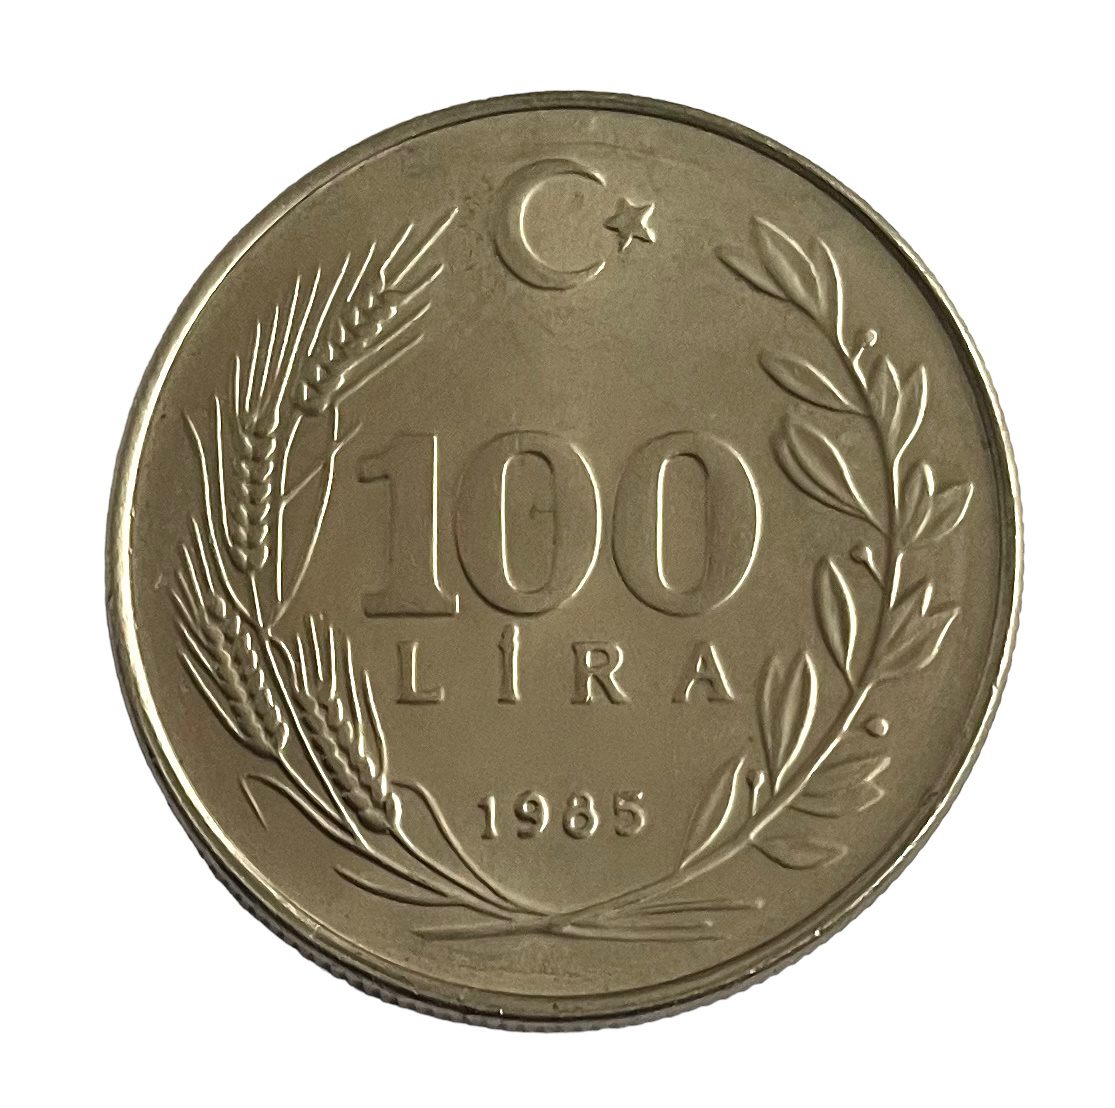 100 Lira 1985 Ön Yüz